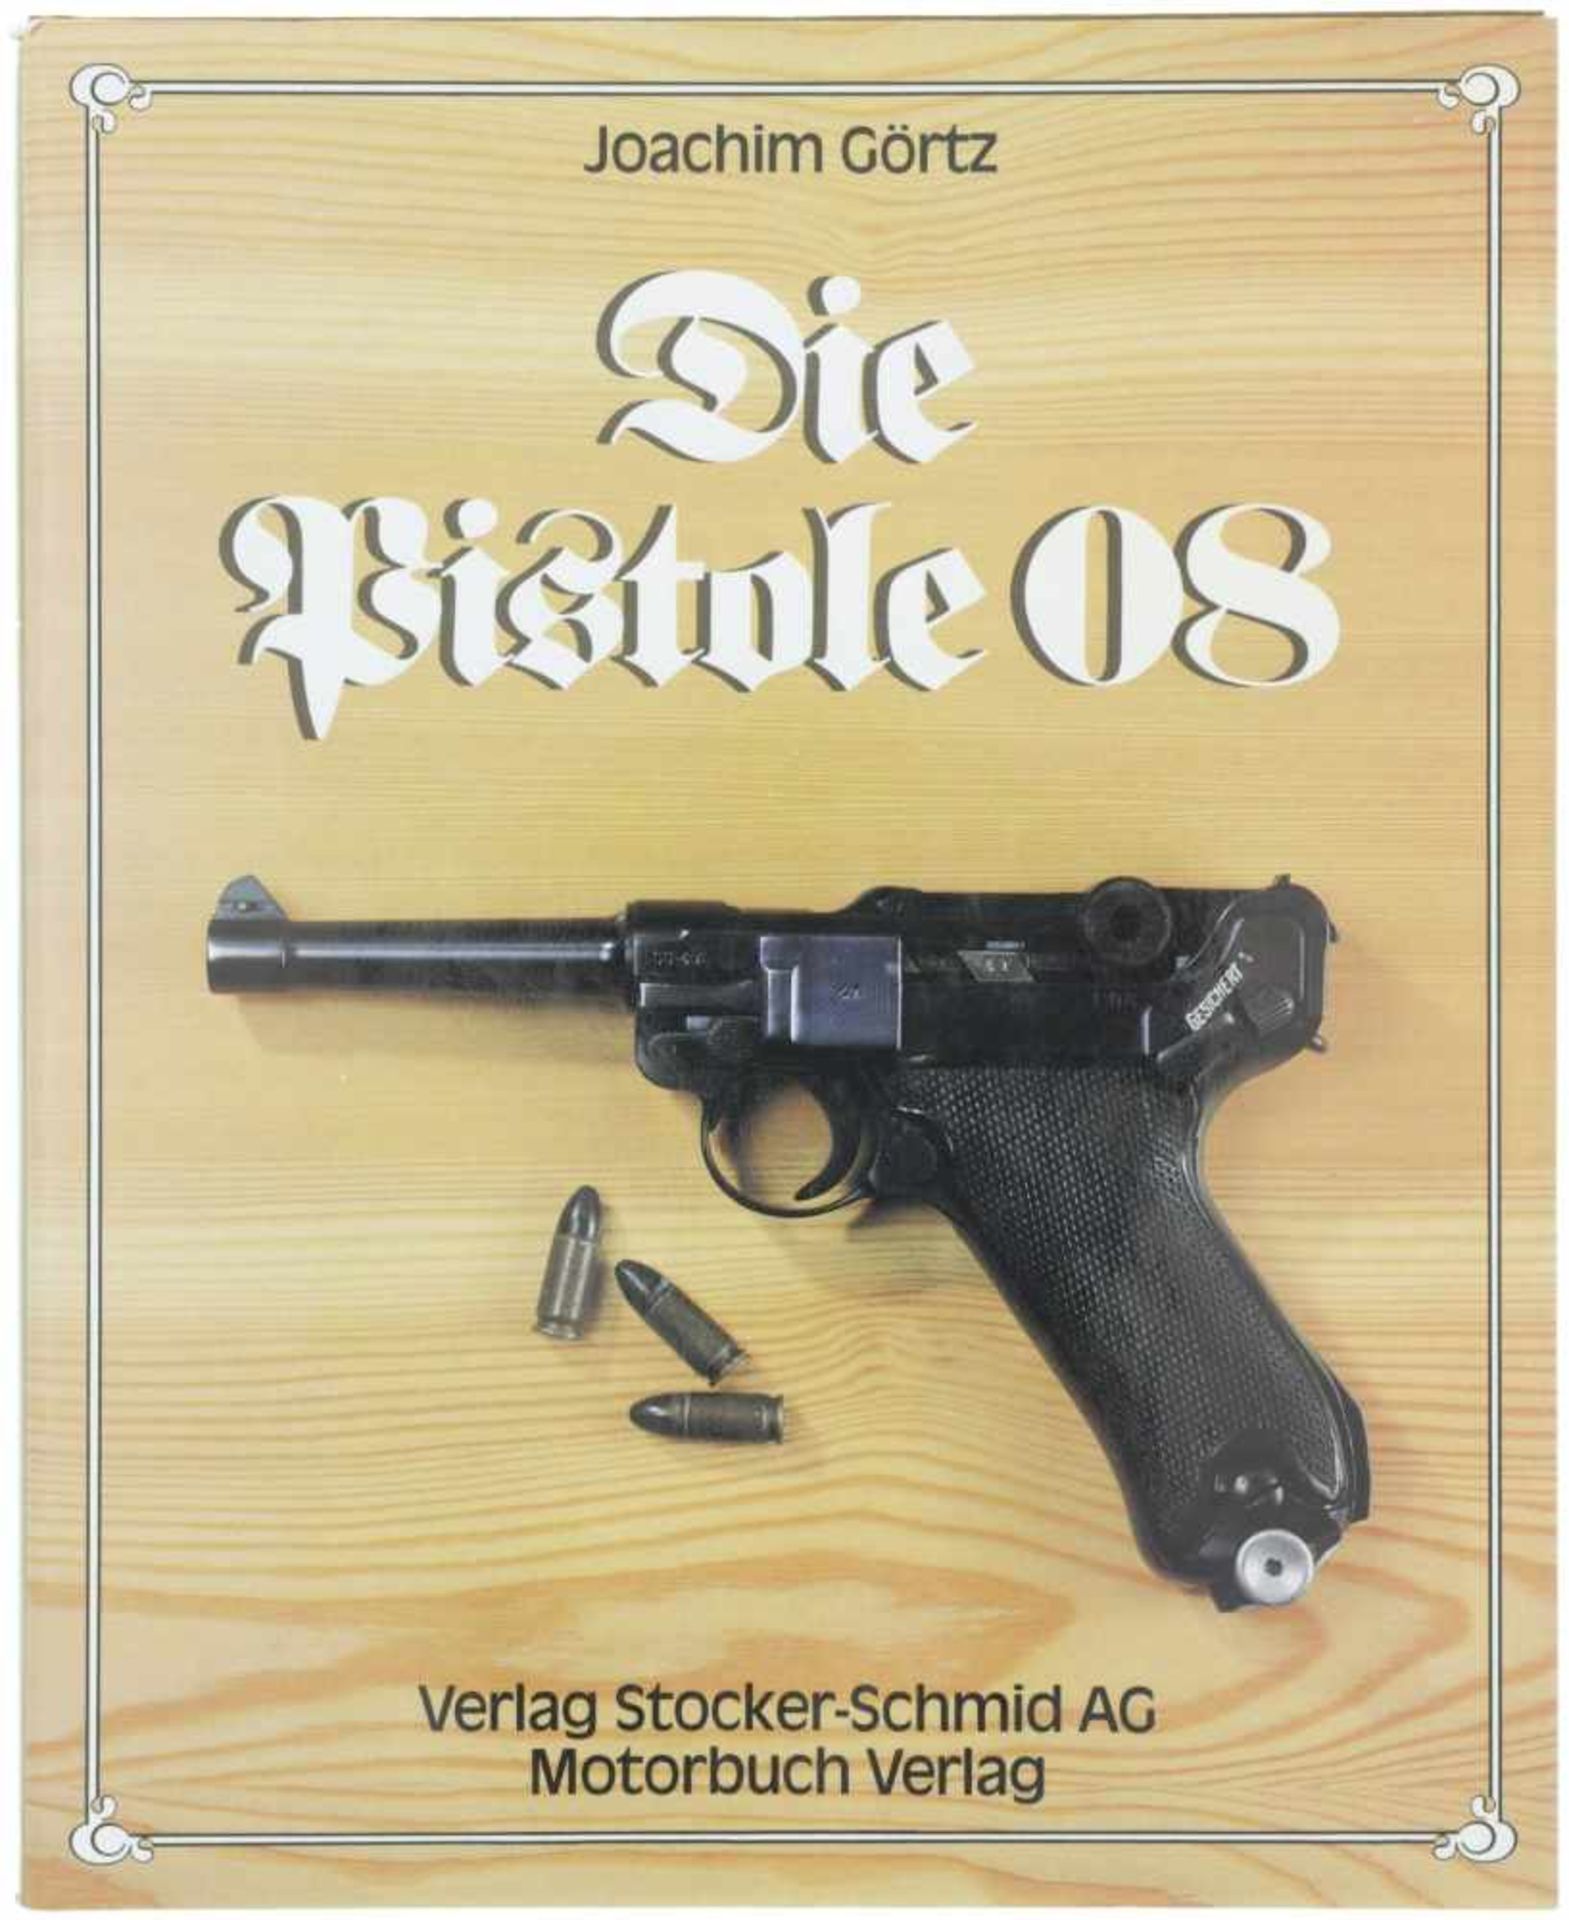 Die Pistole 08 Autor Joachim Görtz, Verlag Stocker-Schmid AG. Die spannende Geschichte der Pistole